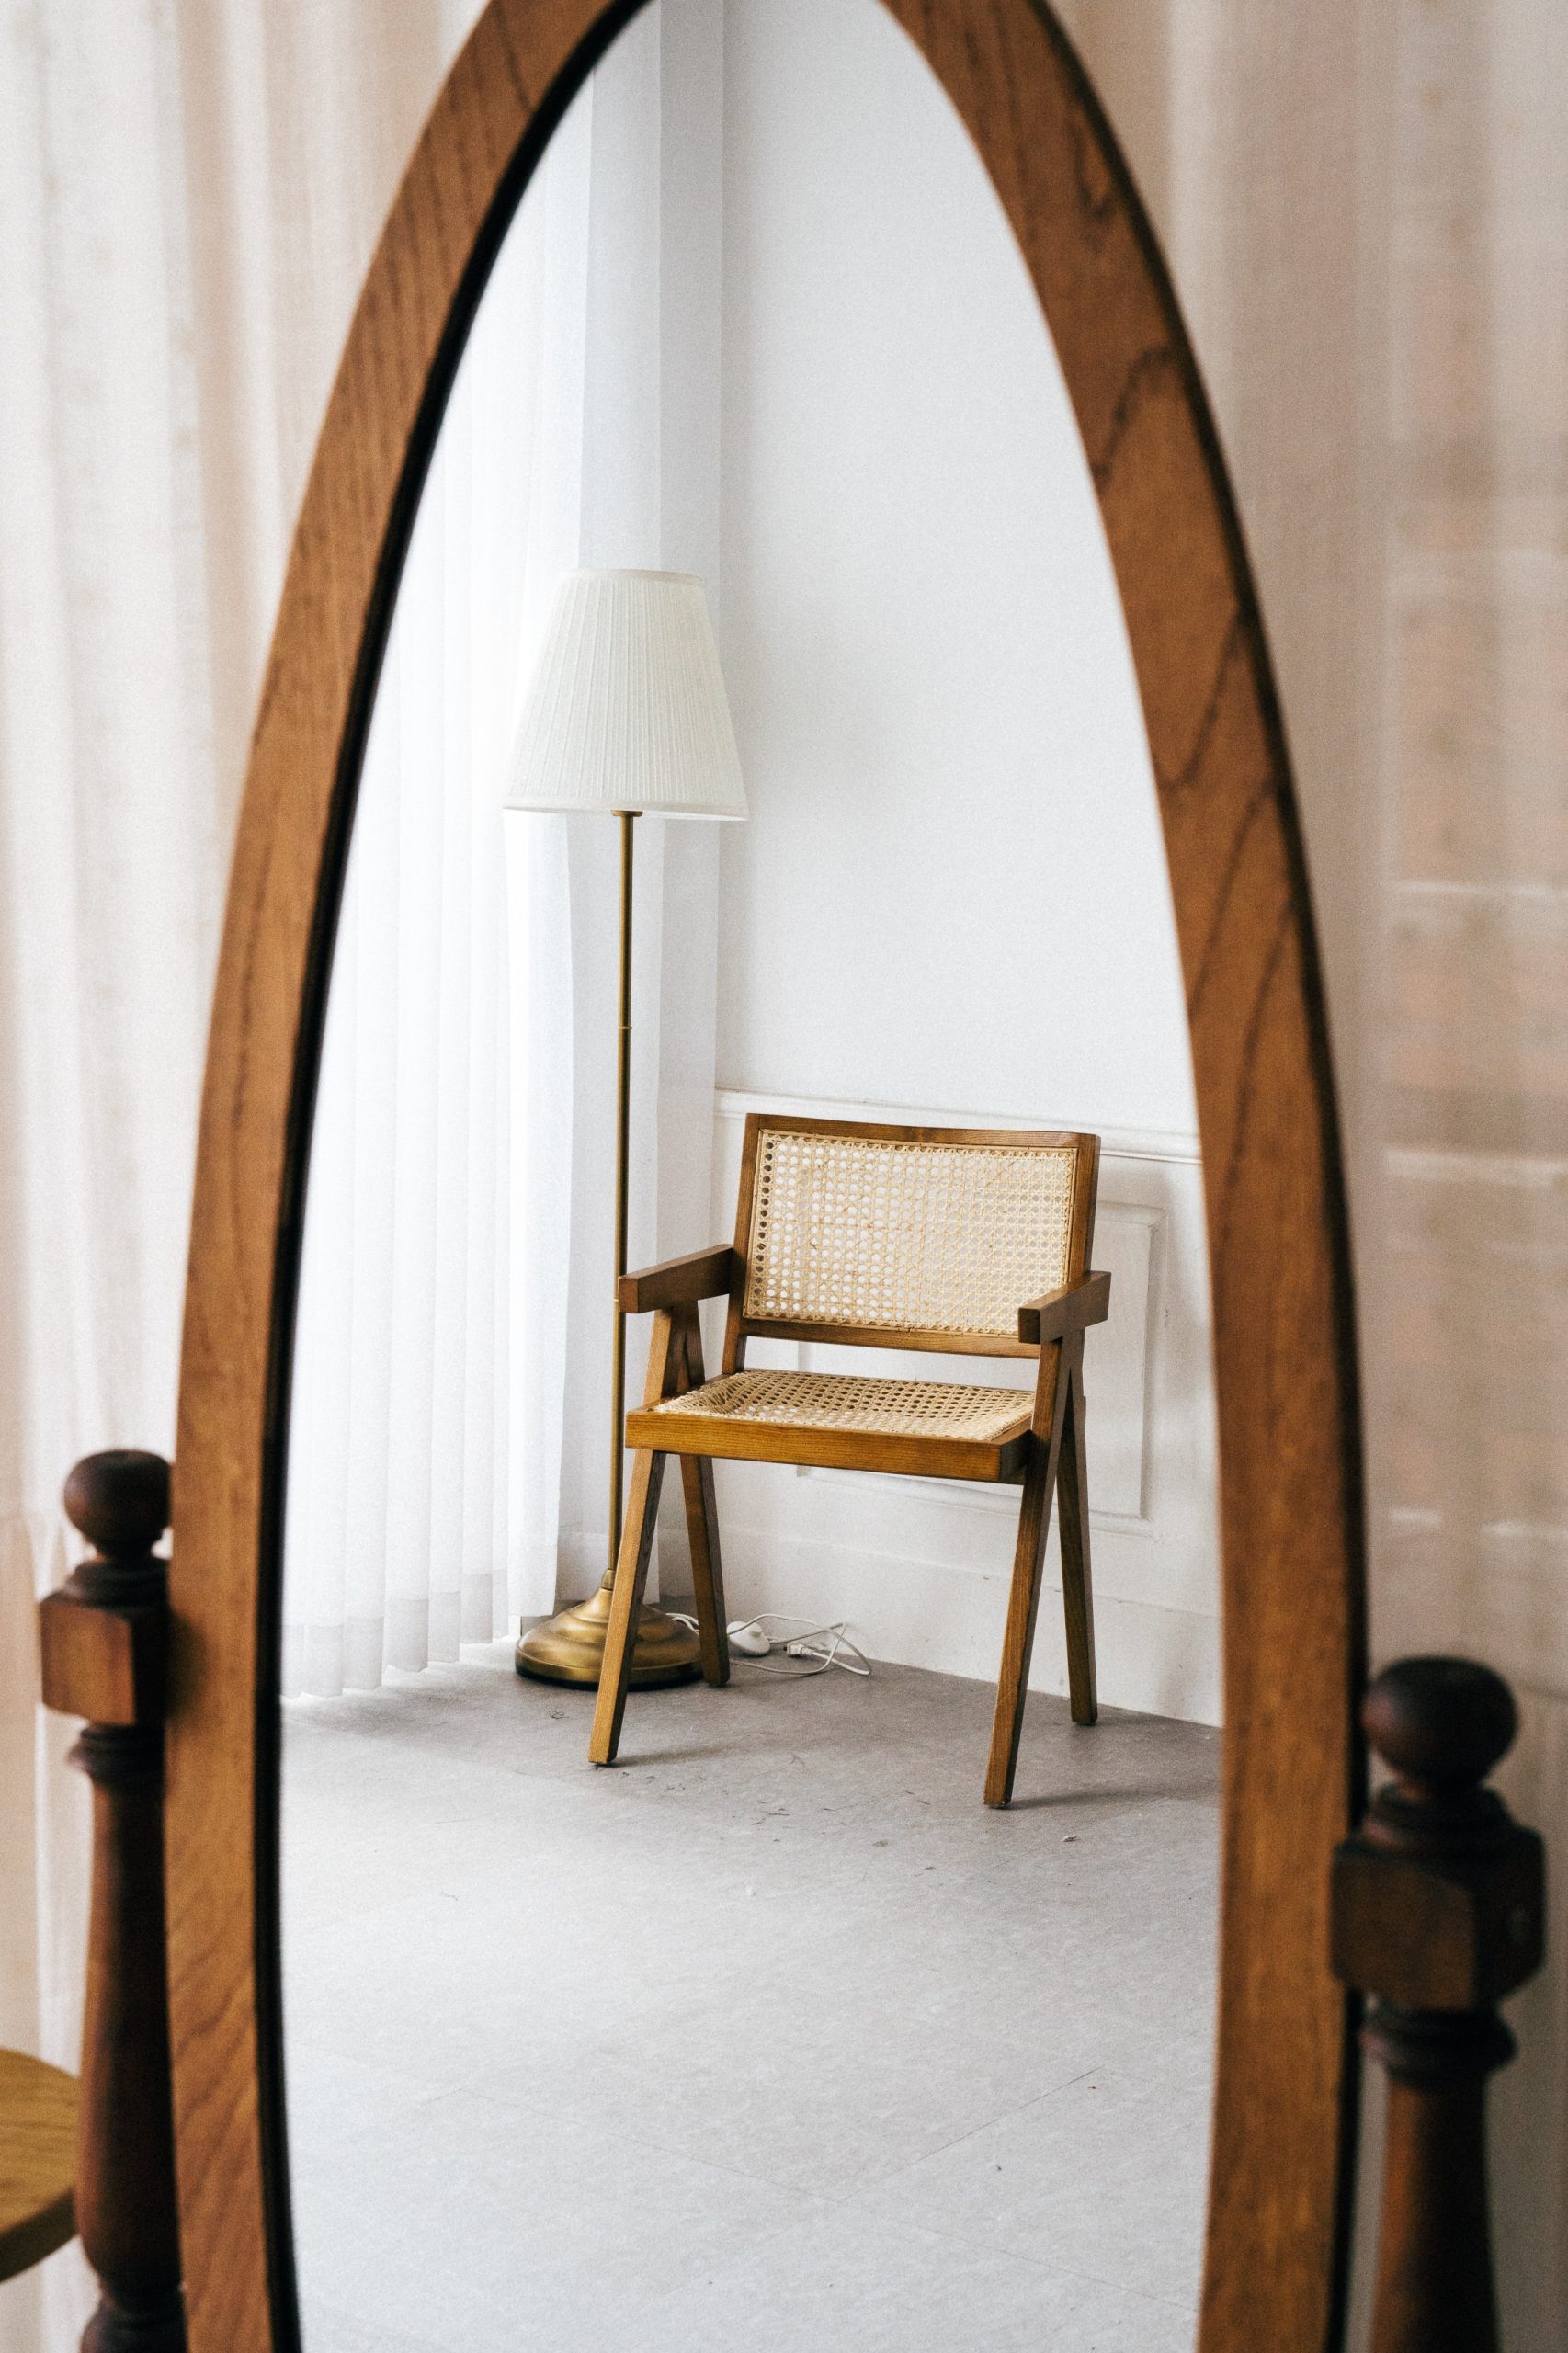 Holzspiegel und -Stuhl